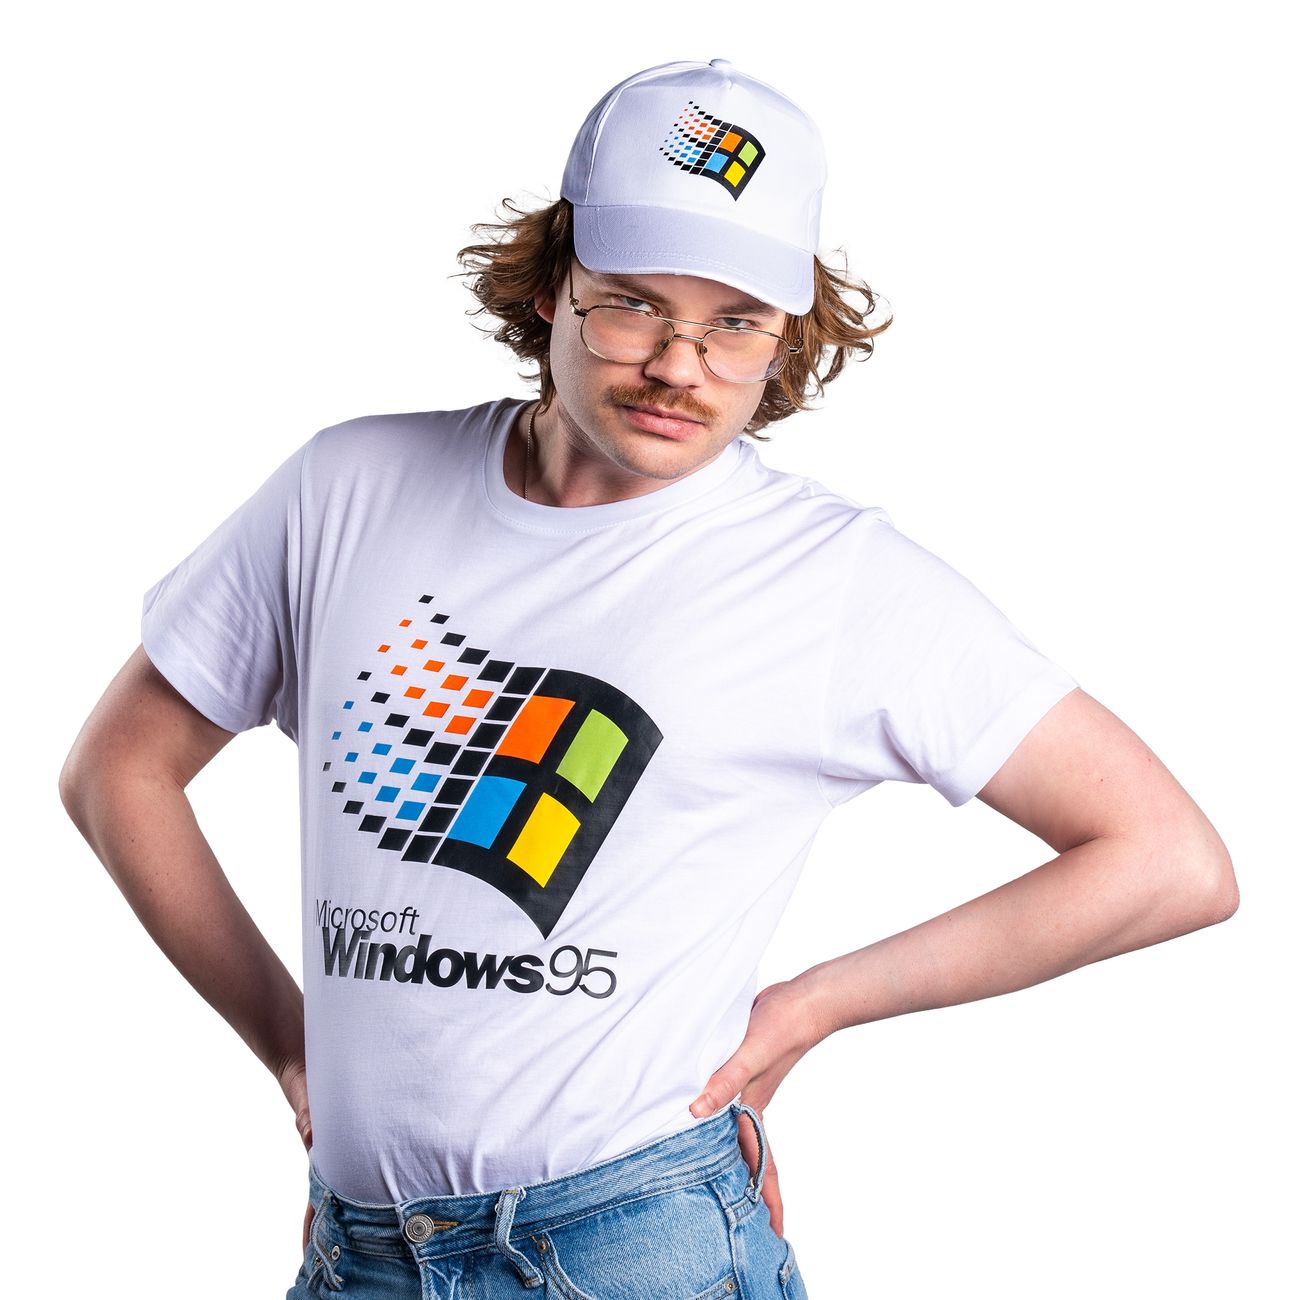 windows-95-t-shirt-101344-3